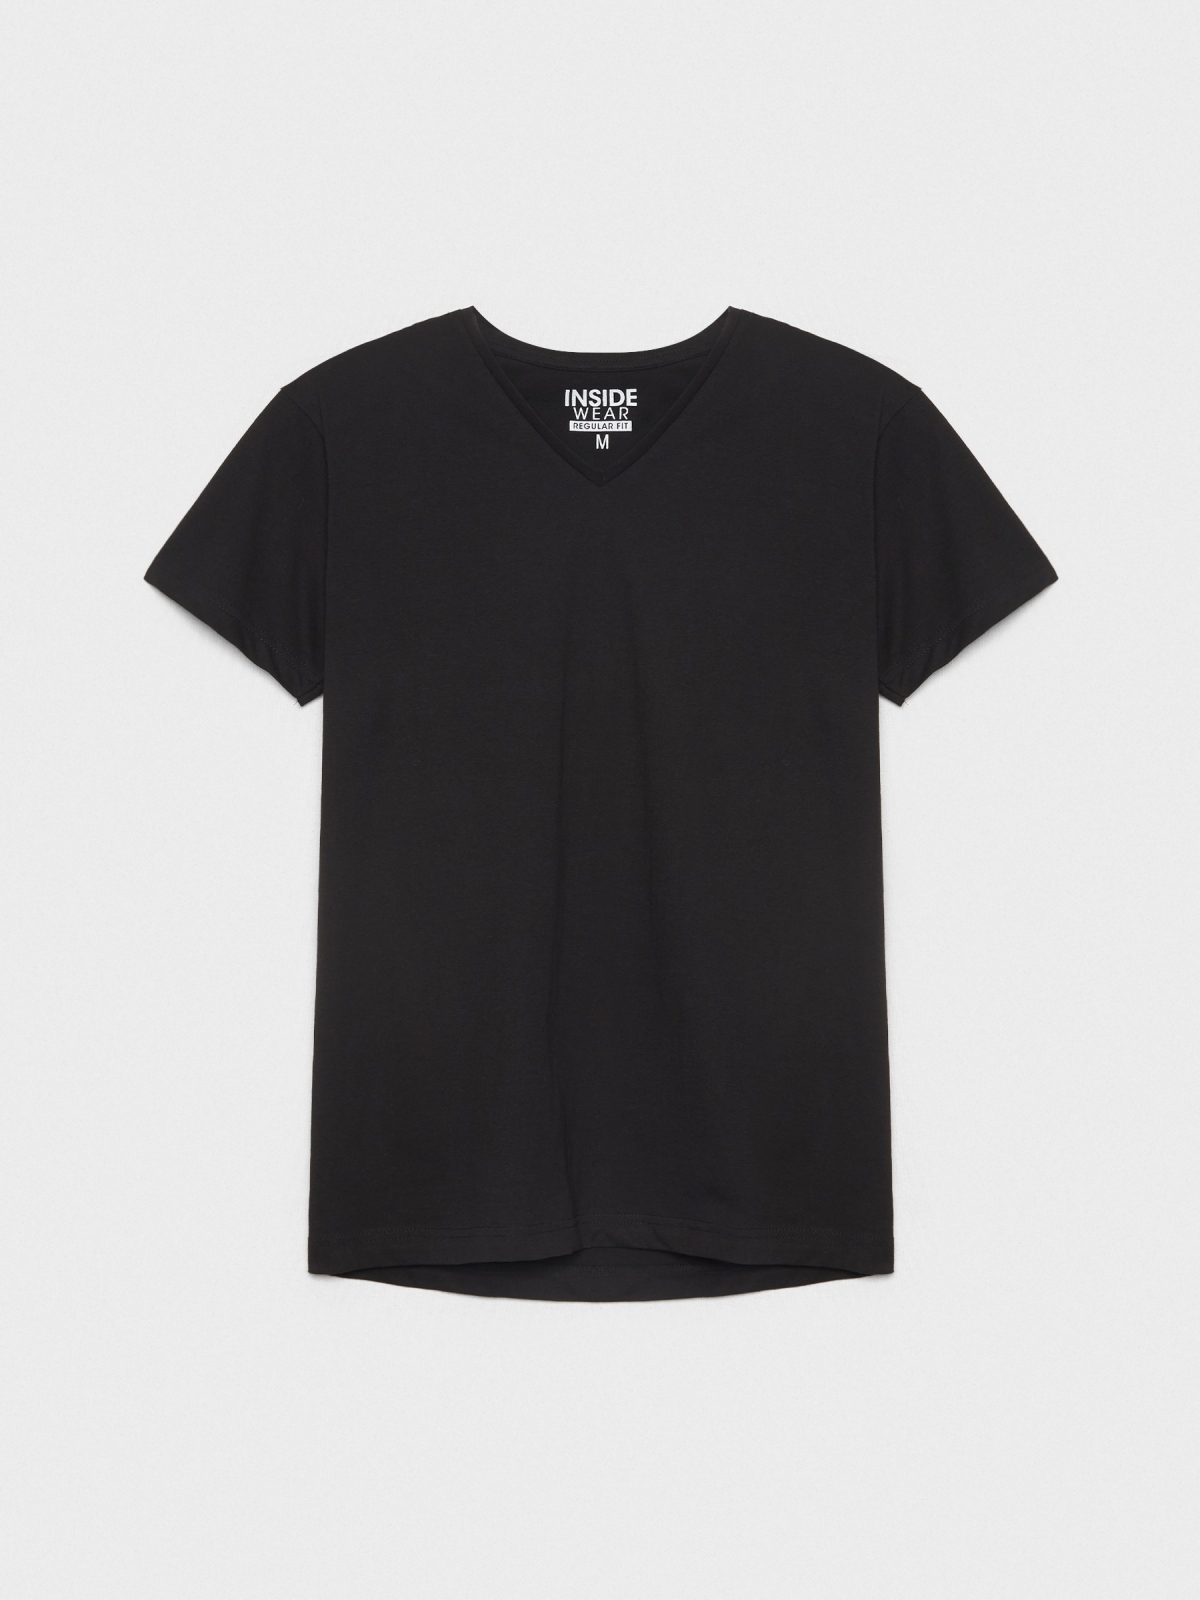  T-shirt básica com decote em V preto